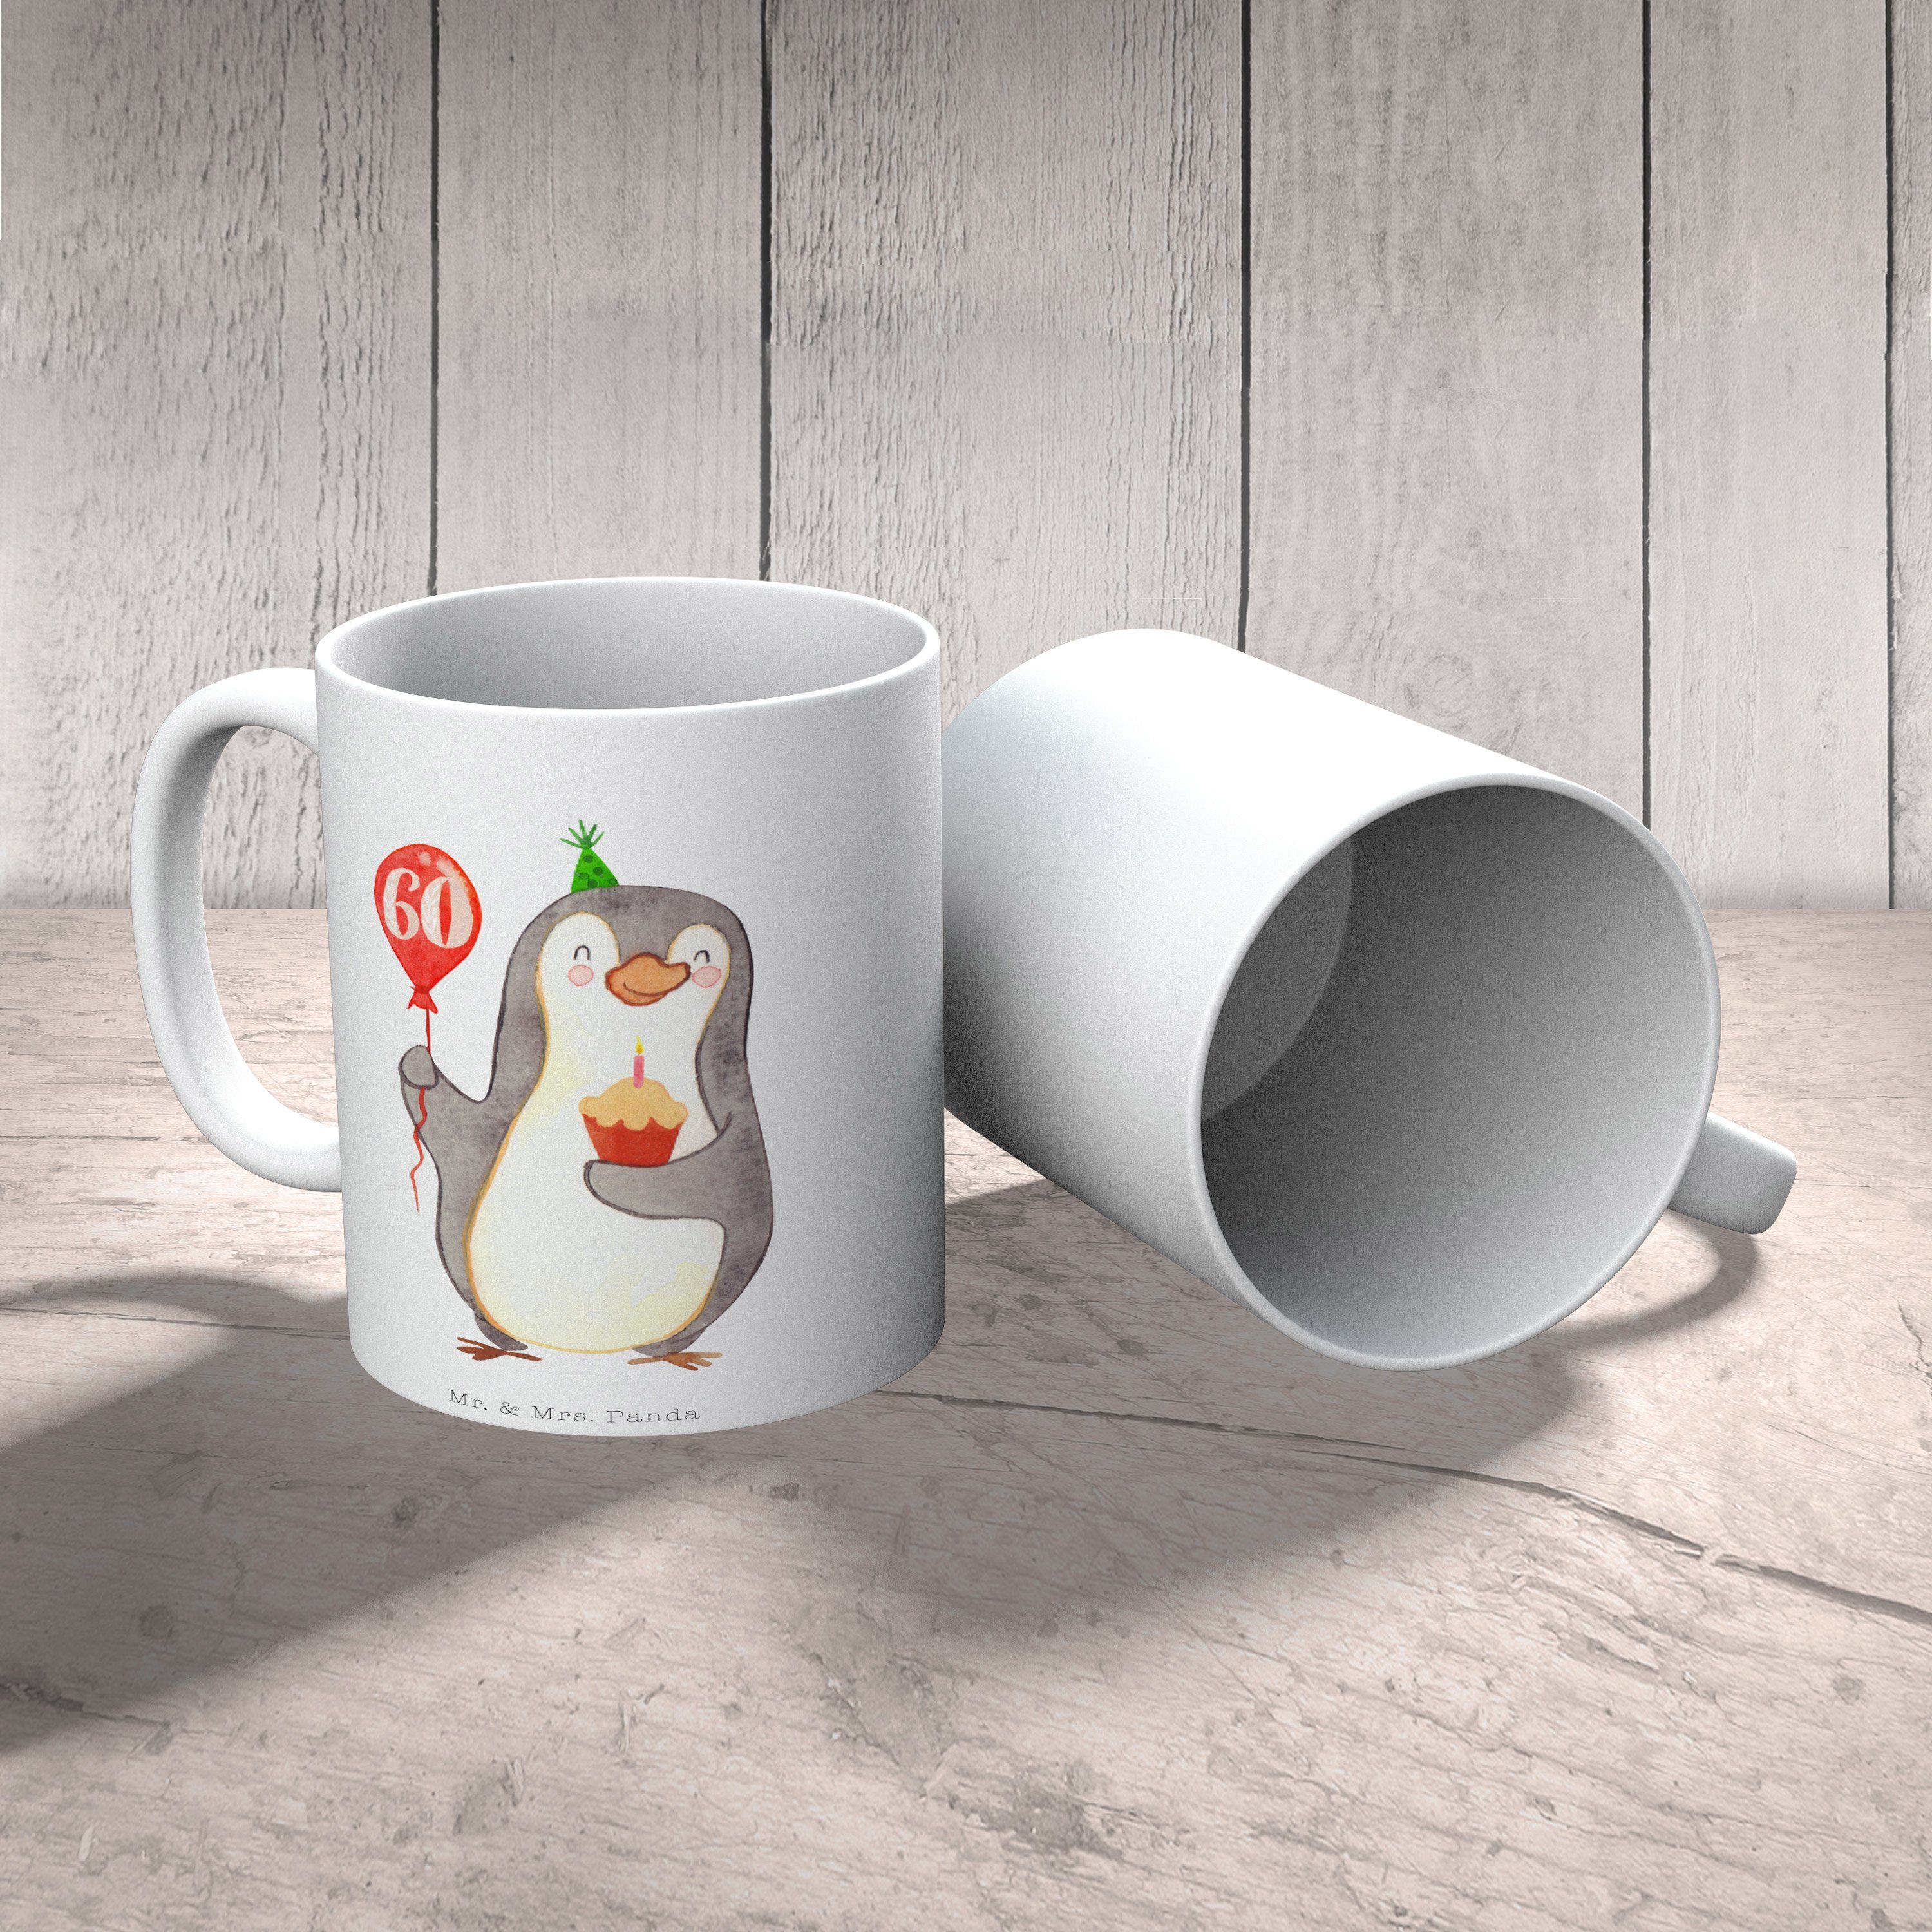 Keramik - Panda Happy Weiß Tasse Mrs. Geschenk, Pinguin Luftballon Mr. - & Geburtstag Birthday, 60.